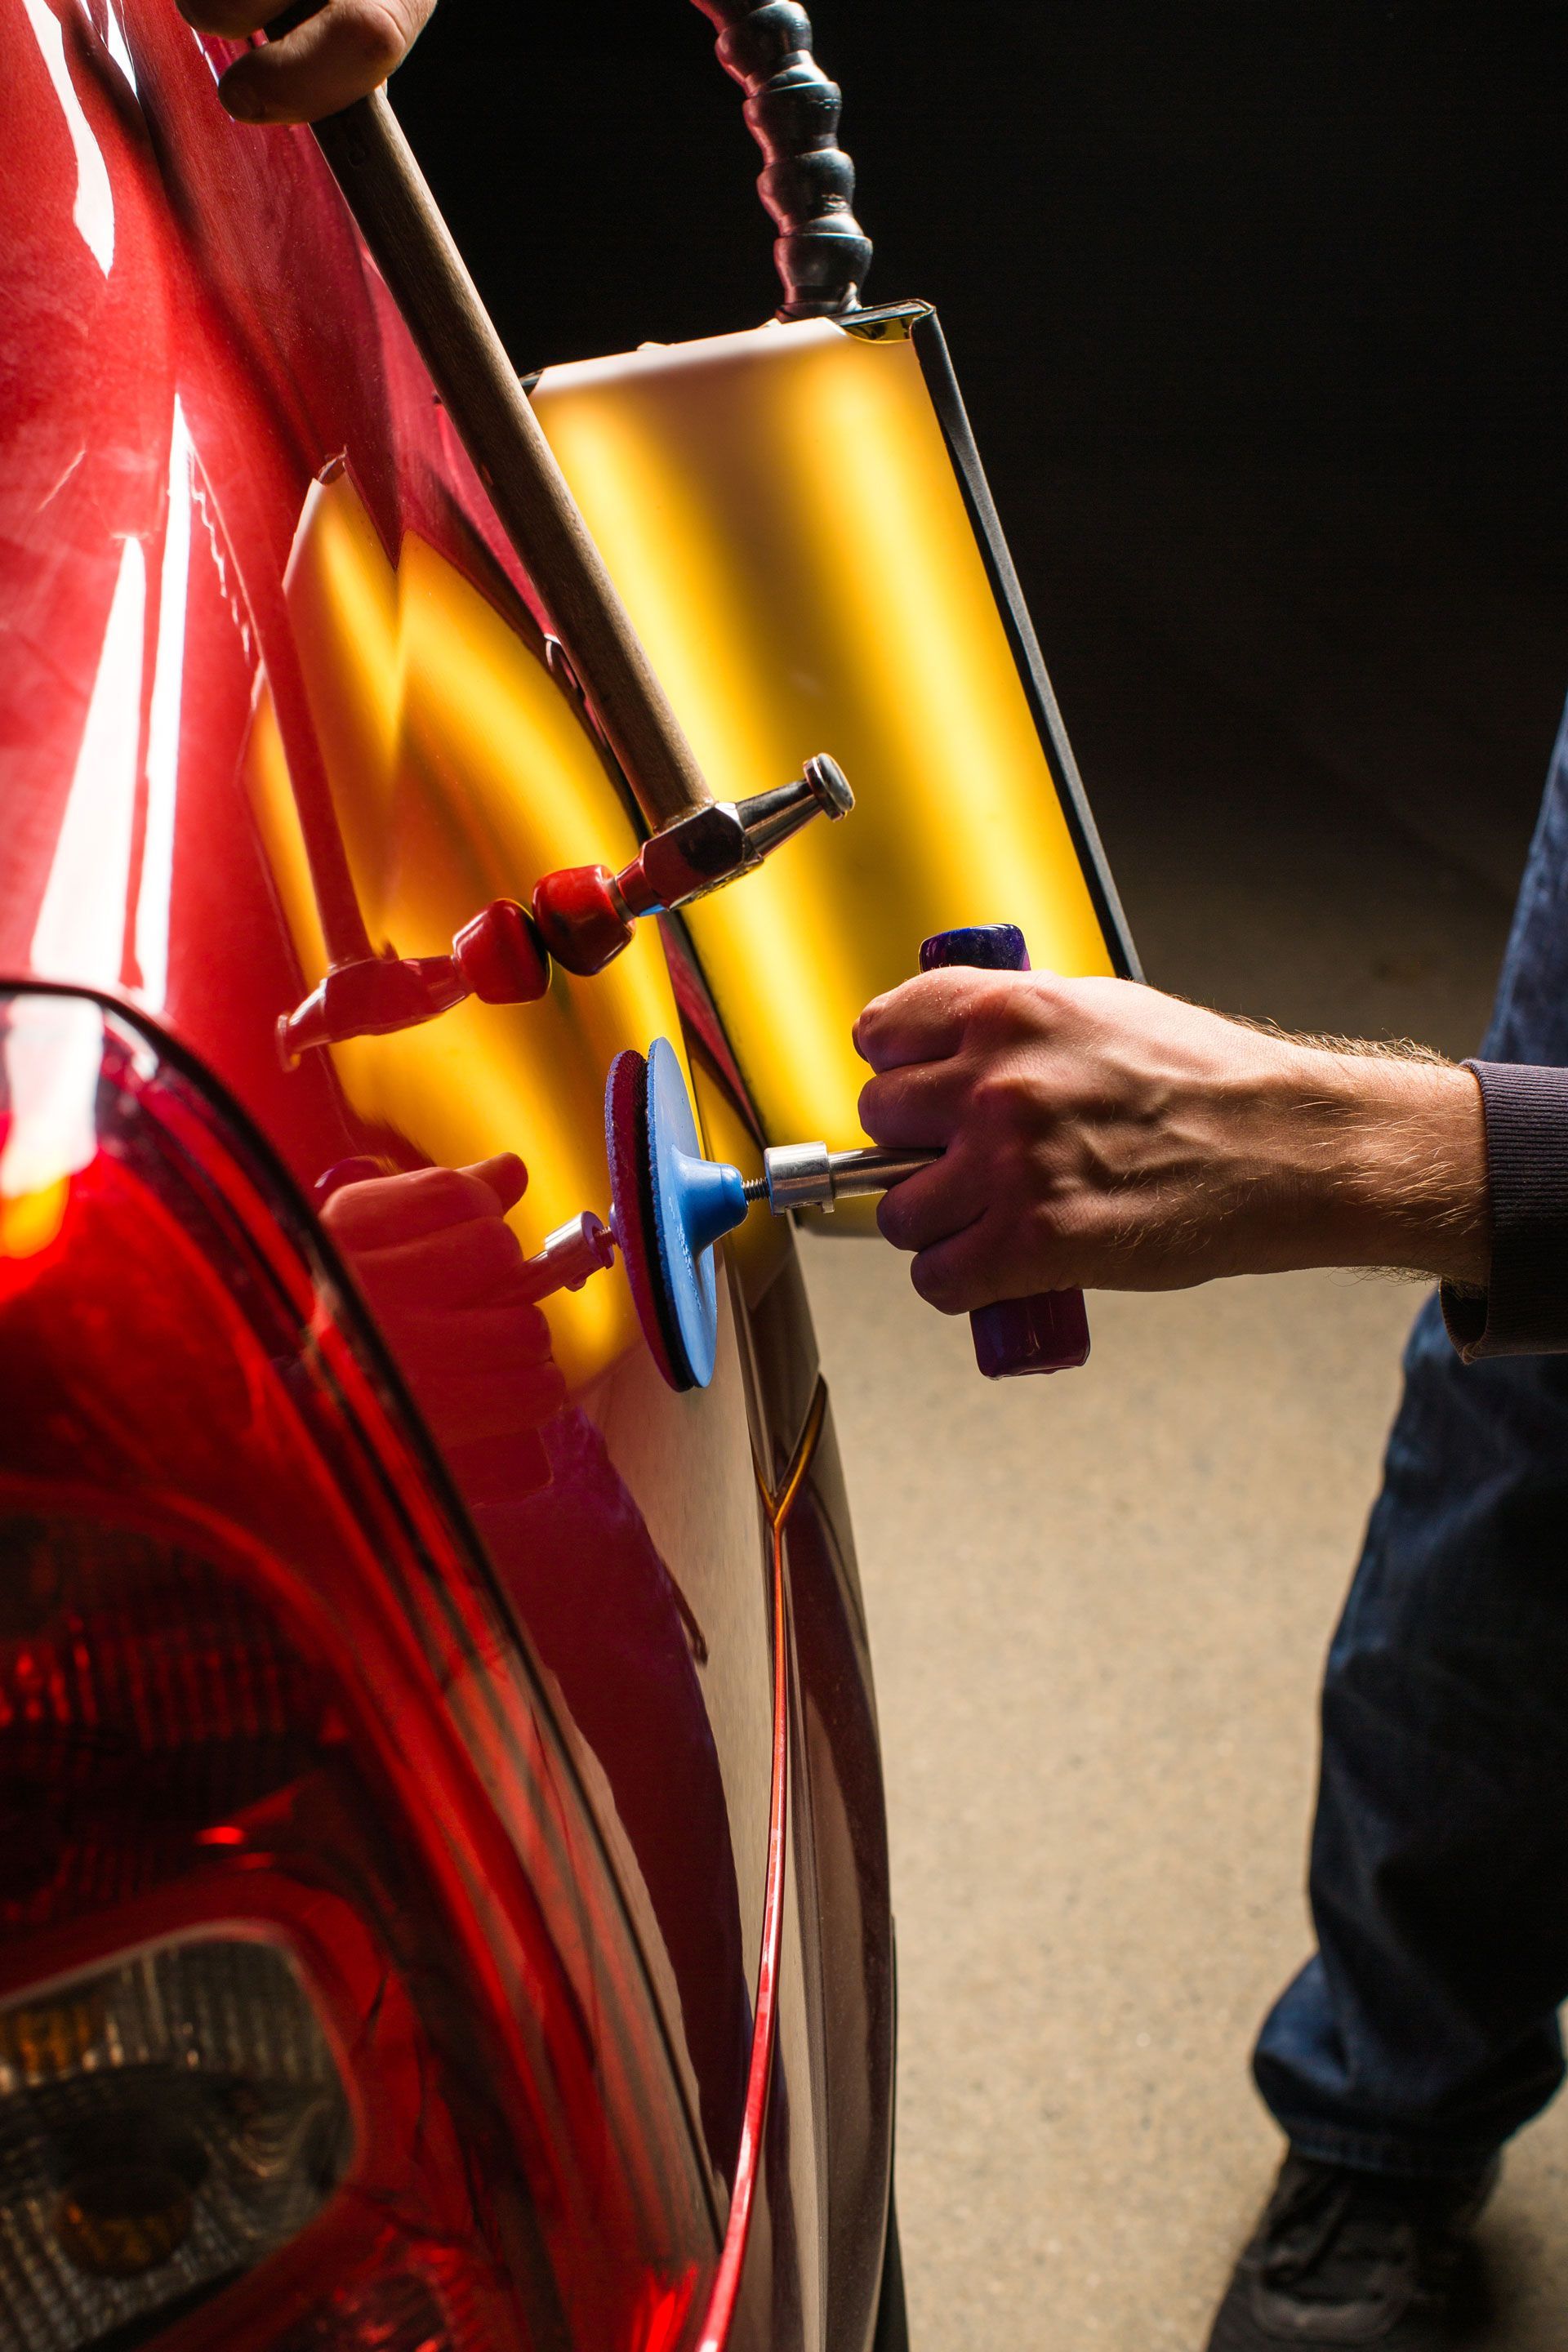 A man is using a tool to fix a dent on a red car .